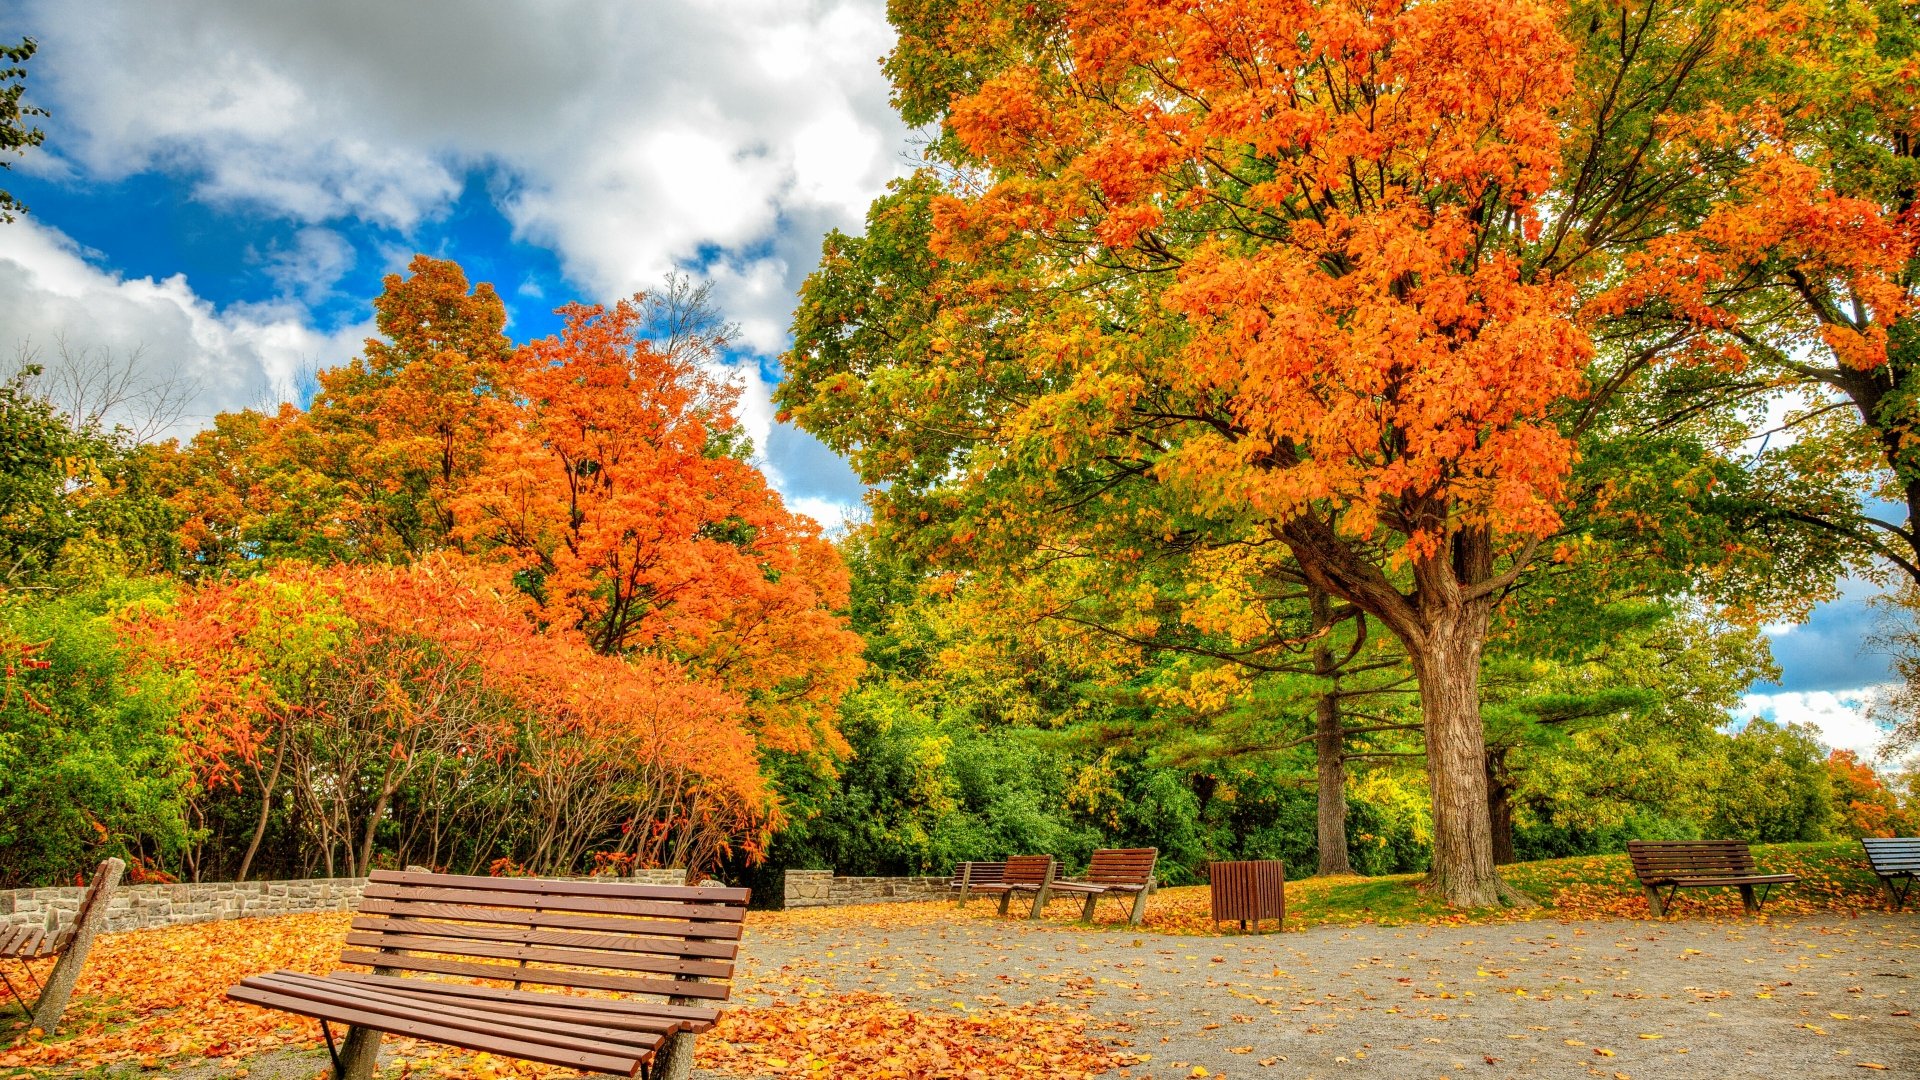 Ghế đá công viên mùa thu là một trong những hình ảnh đẹp và lãng mạn nhất của mùa thu. Hãy tận hưởng khoảnh khắc thư giãn trên những ghế đá yên bình, trước một khung cảnh đầy nắng vàng của lá, và tận hưởng khoảnh khắc tuyệt vời trong ảnh của chúng tôi.